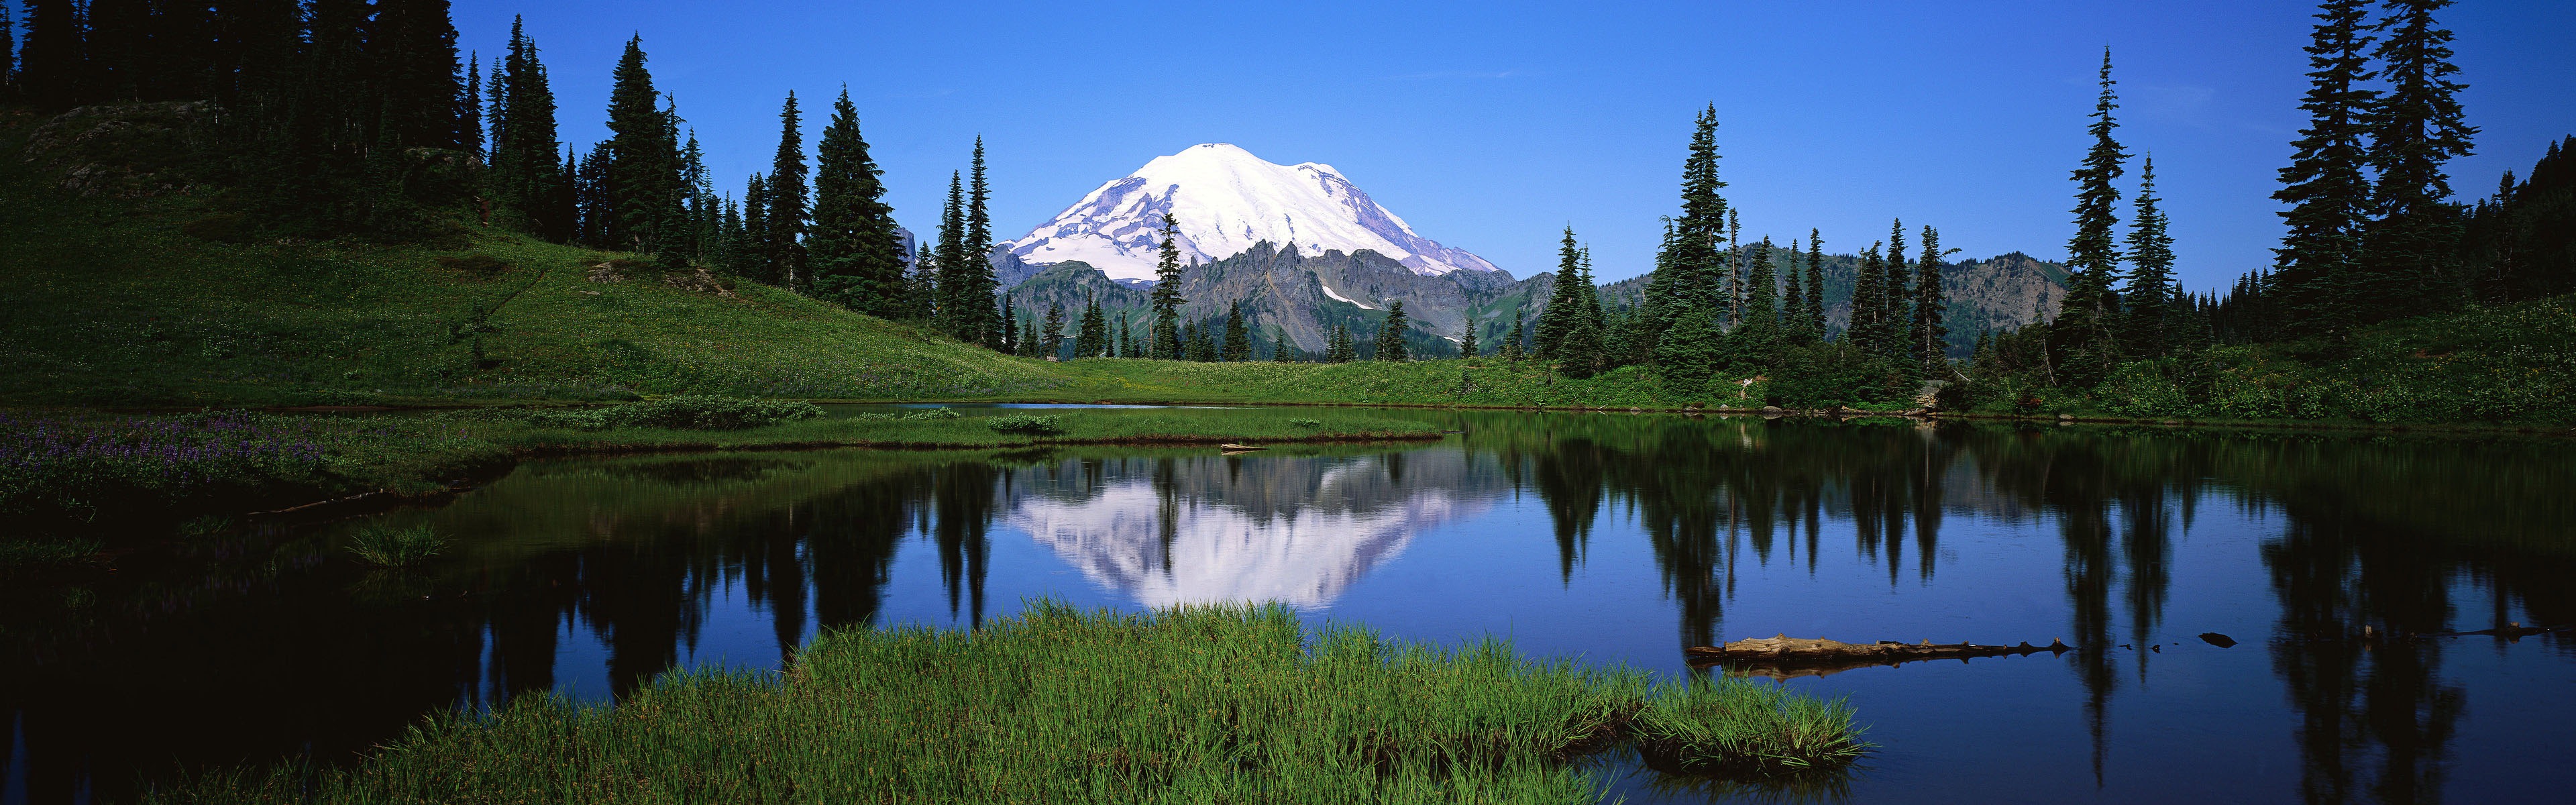 Windows 8 offiziellen Panorama Tapete, Wellen, Wälder, majestätische Berge #18 - 3840x1200